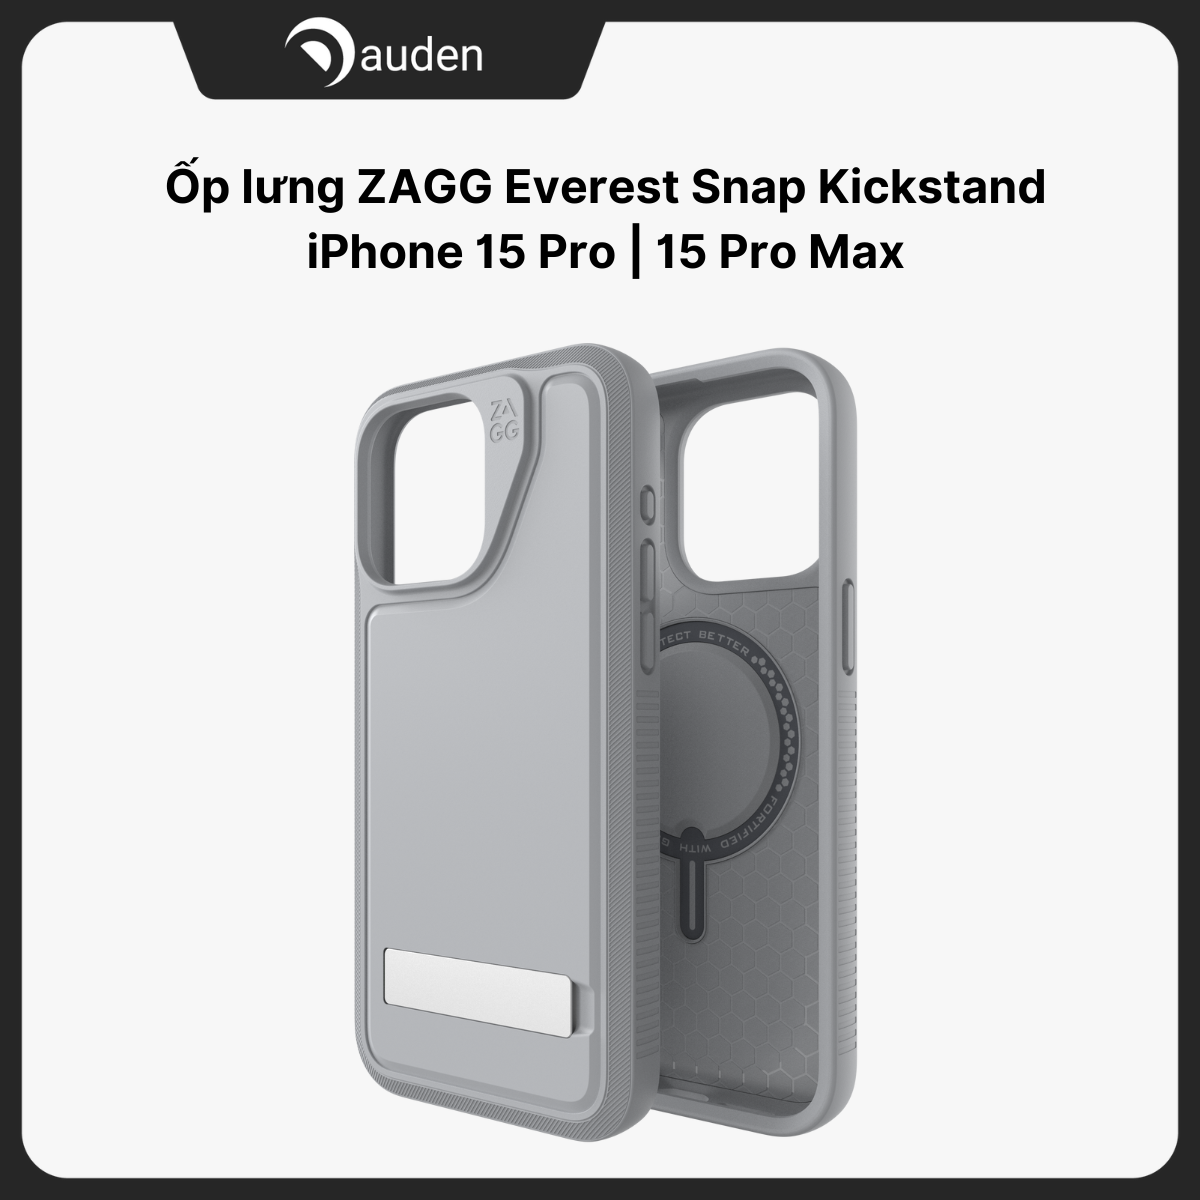 Ốp lưng iPhone 15 Pro iPhone 15 Pro Max ZAGG Everest Snap Kickstand hỗ trợ sạc MagSafe không dây - Hàng chính hãng bảo hành 12 tháng 1 đổi 1